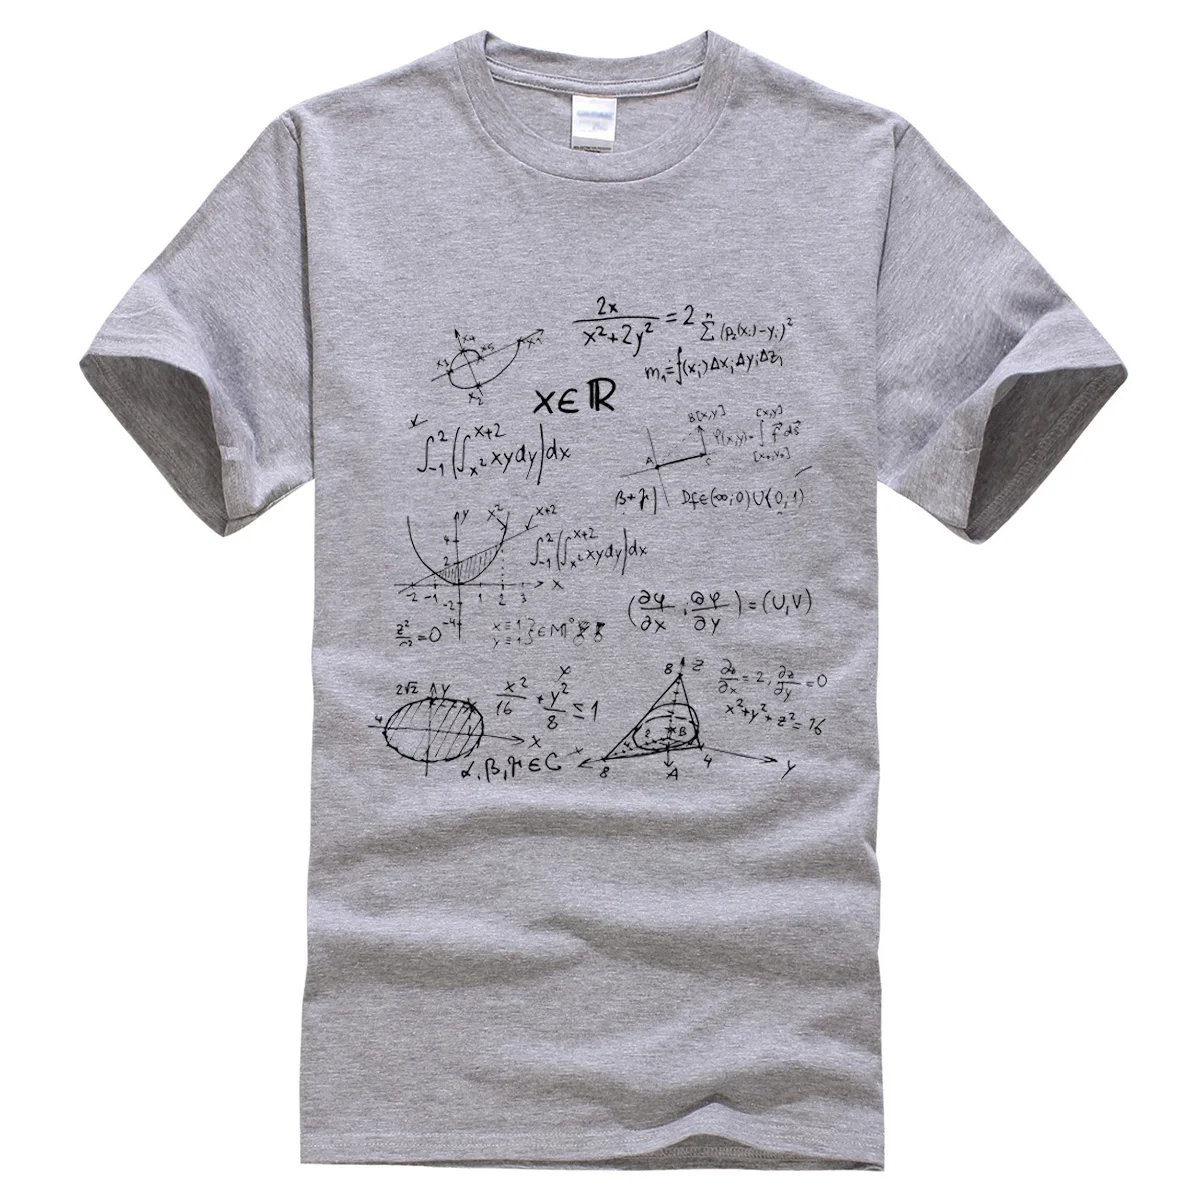 Футболка летняя математическая формула мужские футболки Теория Большого Взрыва футболка мужская спортивная одежда брендовая одежда футболки хлопок - Цвет: gray1